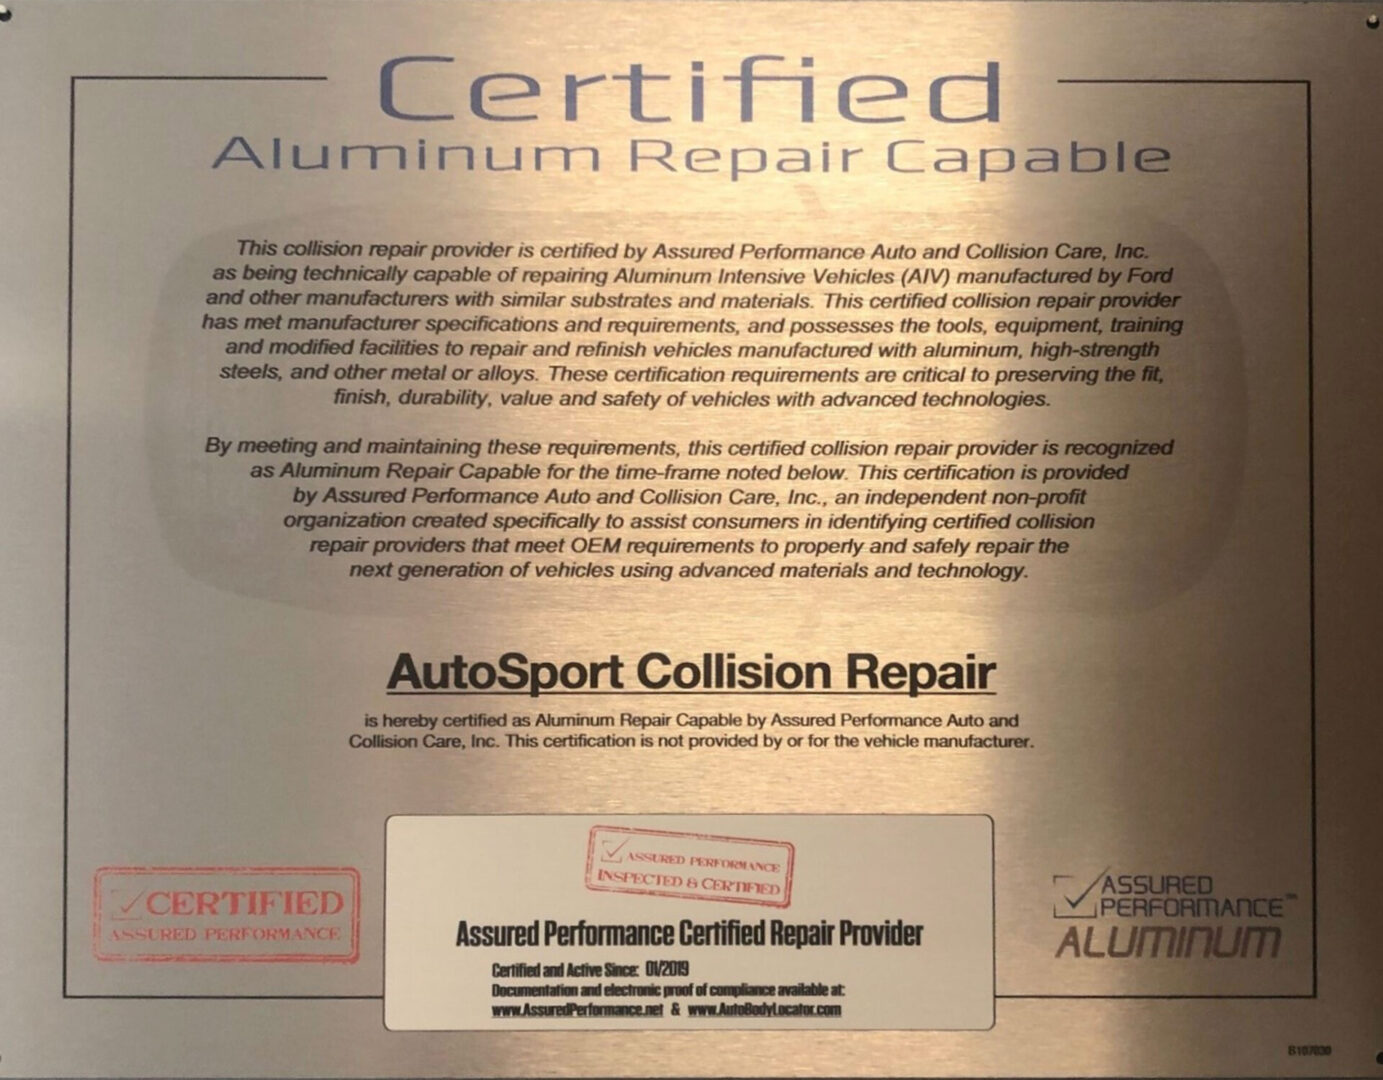 https://autosportcollisionrepair.com/wp-content/uploads/2021/07/Aluminum-1-scaled.jpg